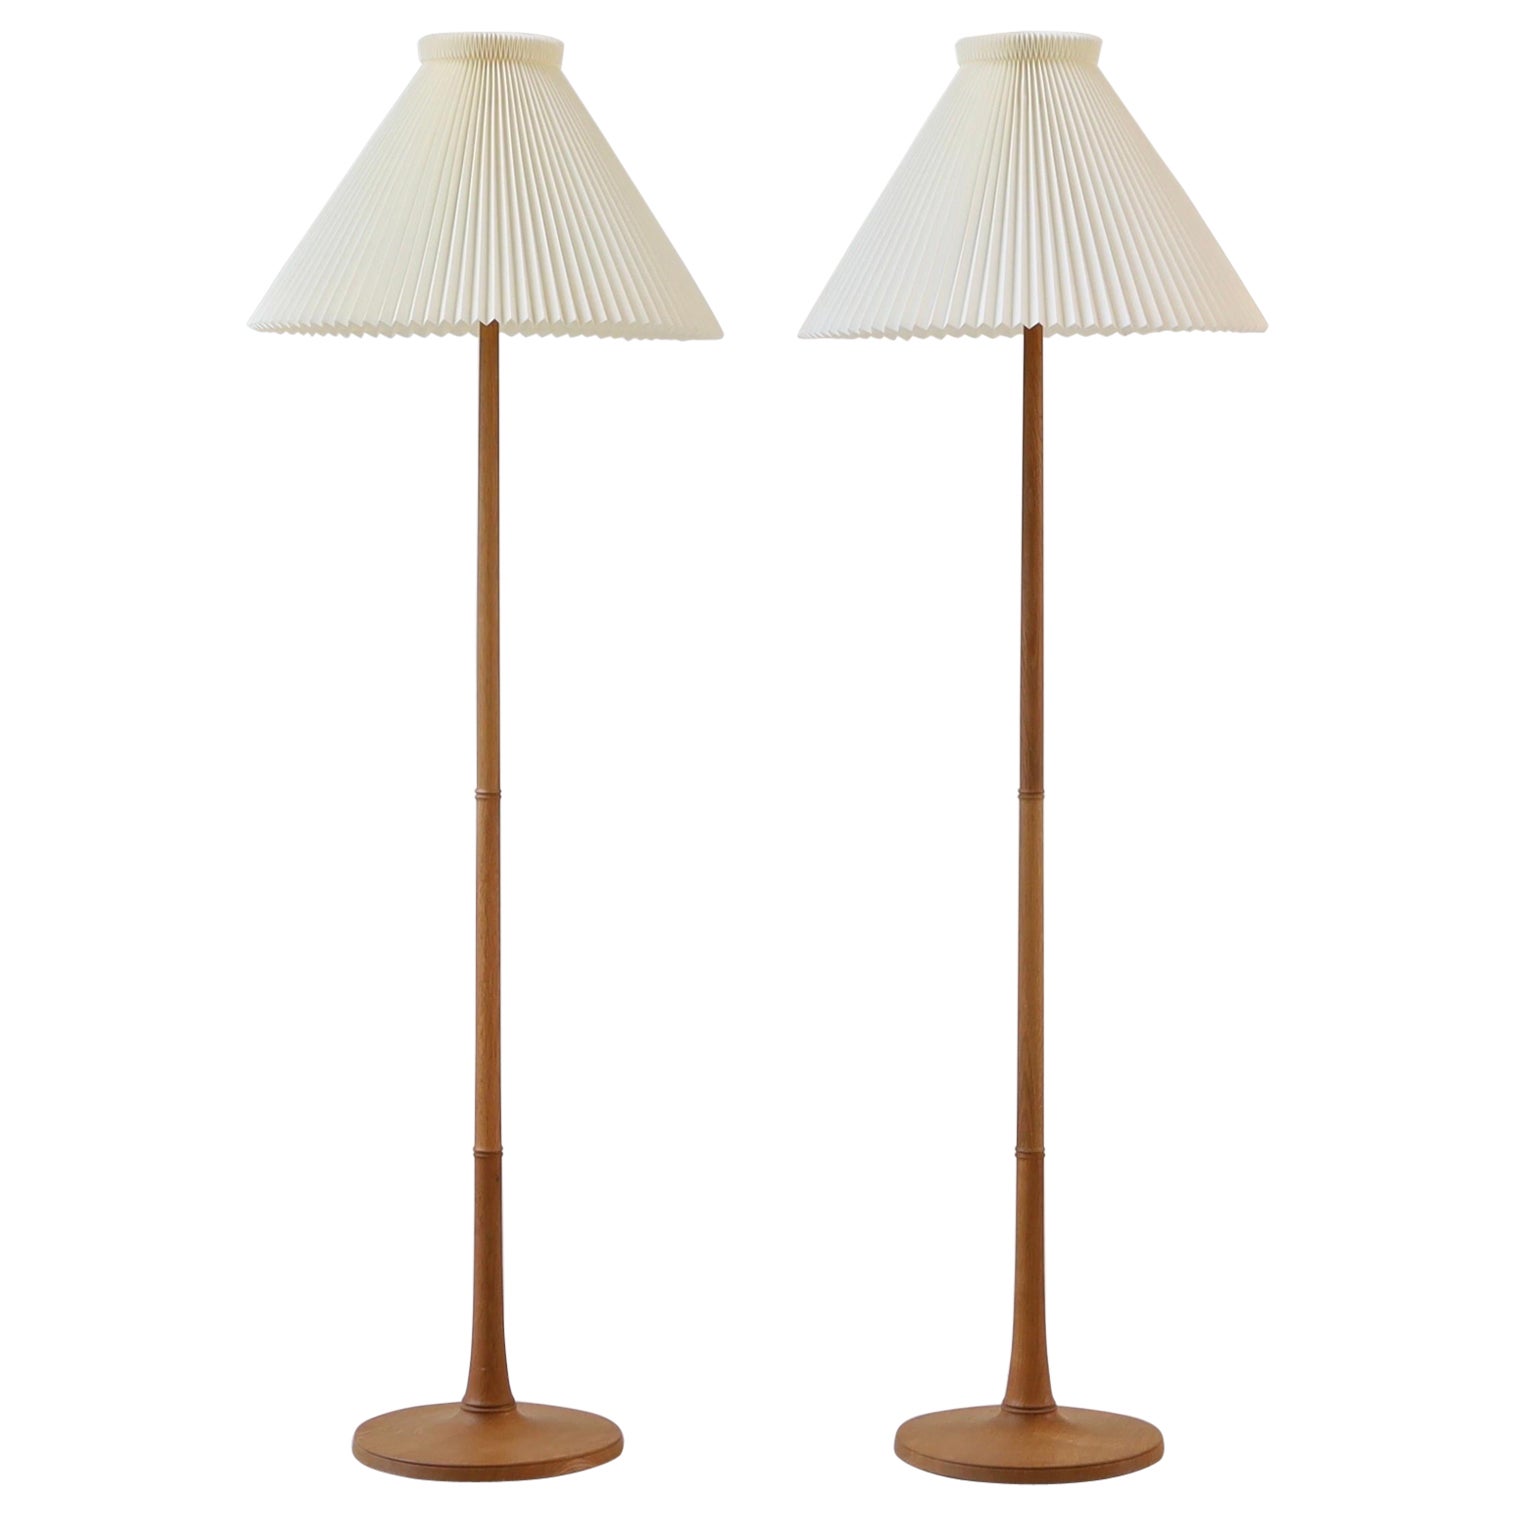 Set of Danish Modern Le Klint oak wood floor lamps, 1950s, Denmark For Sale